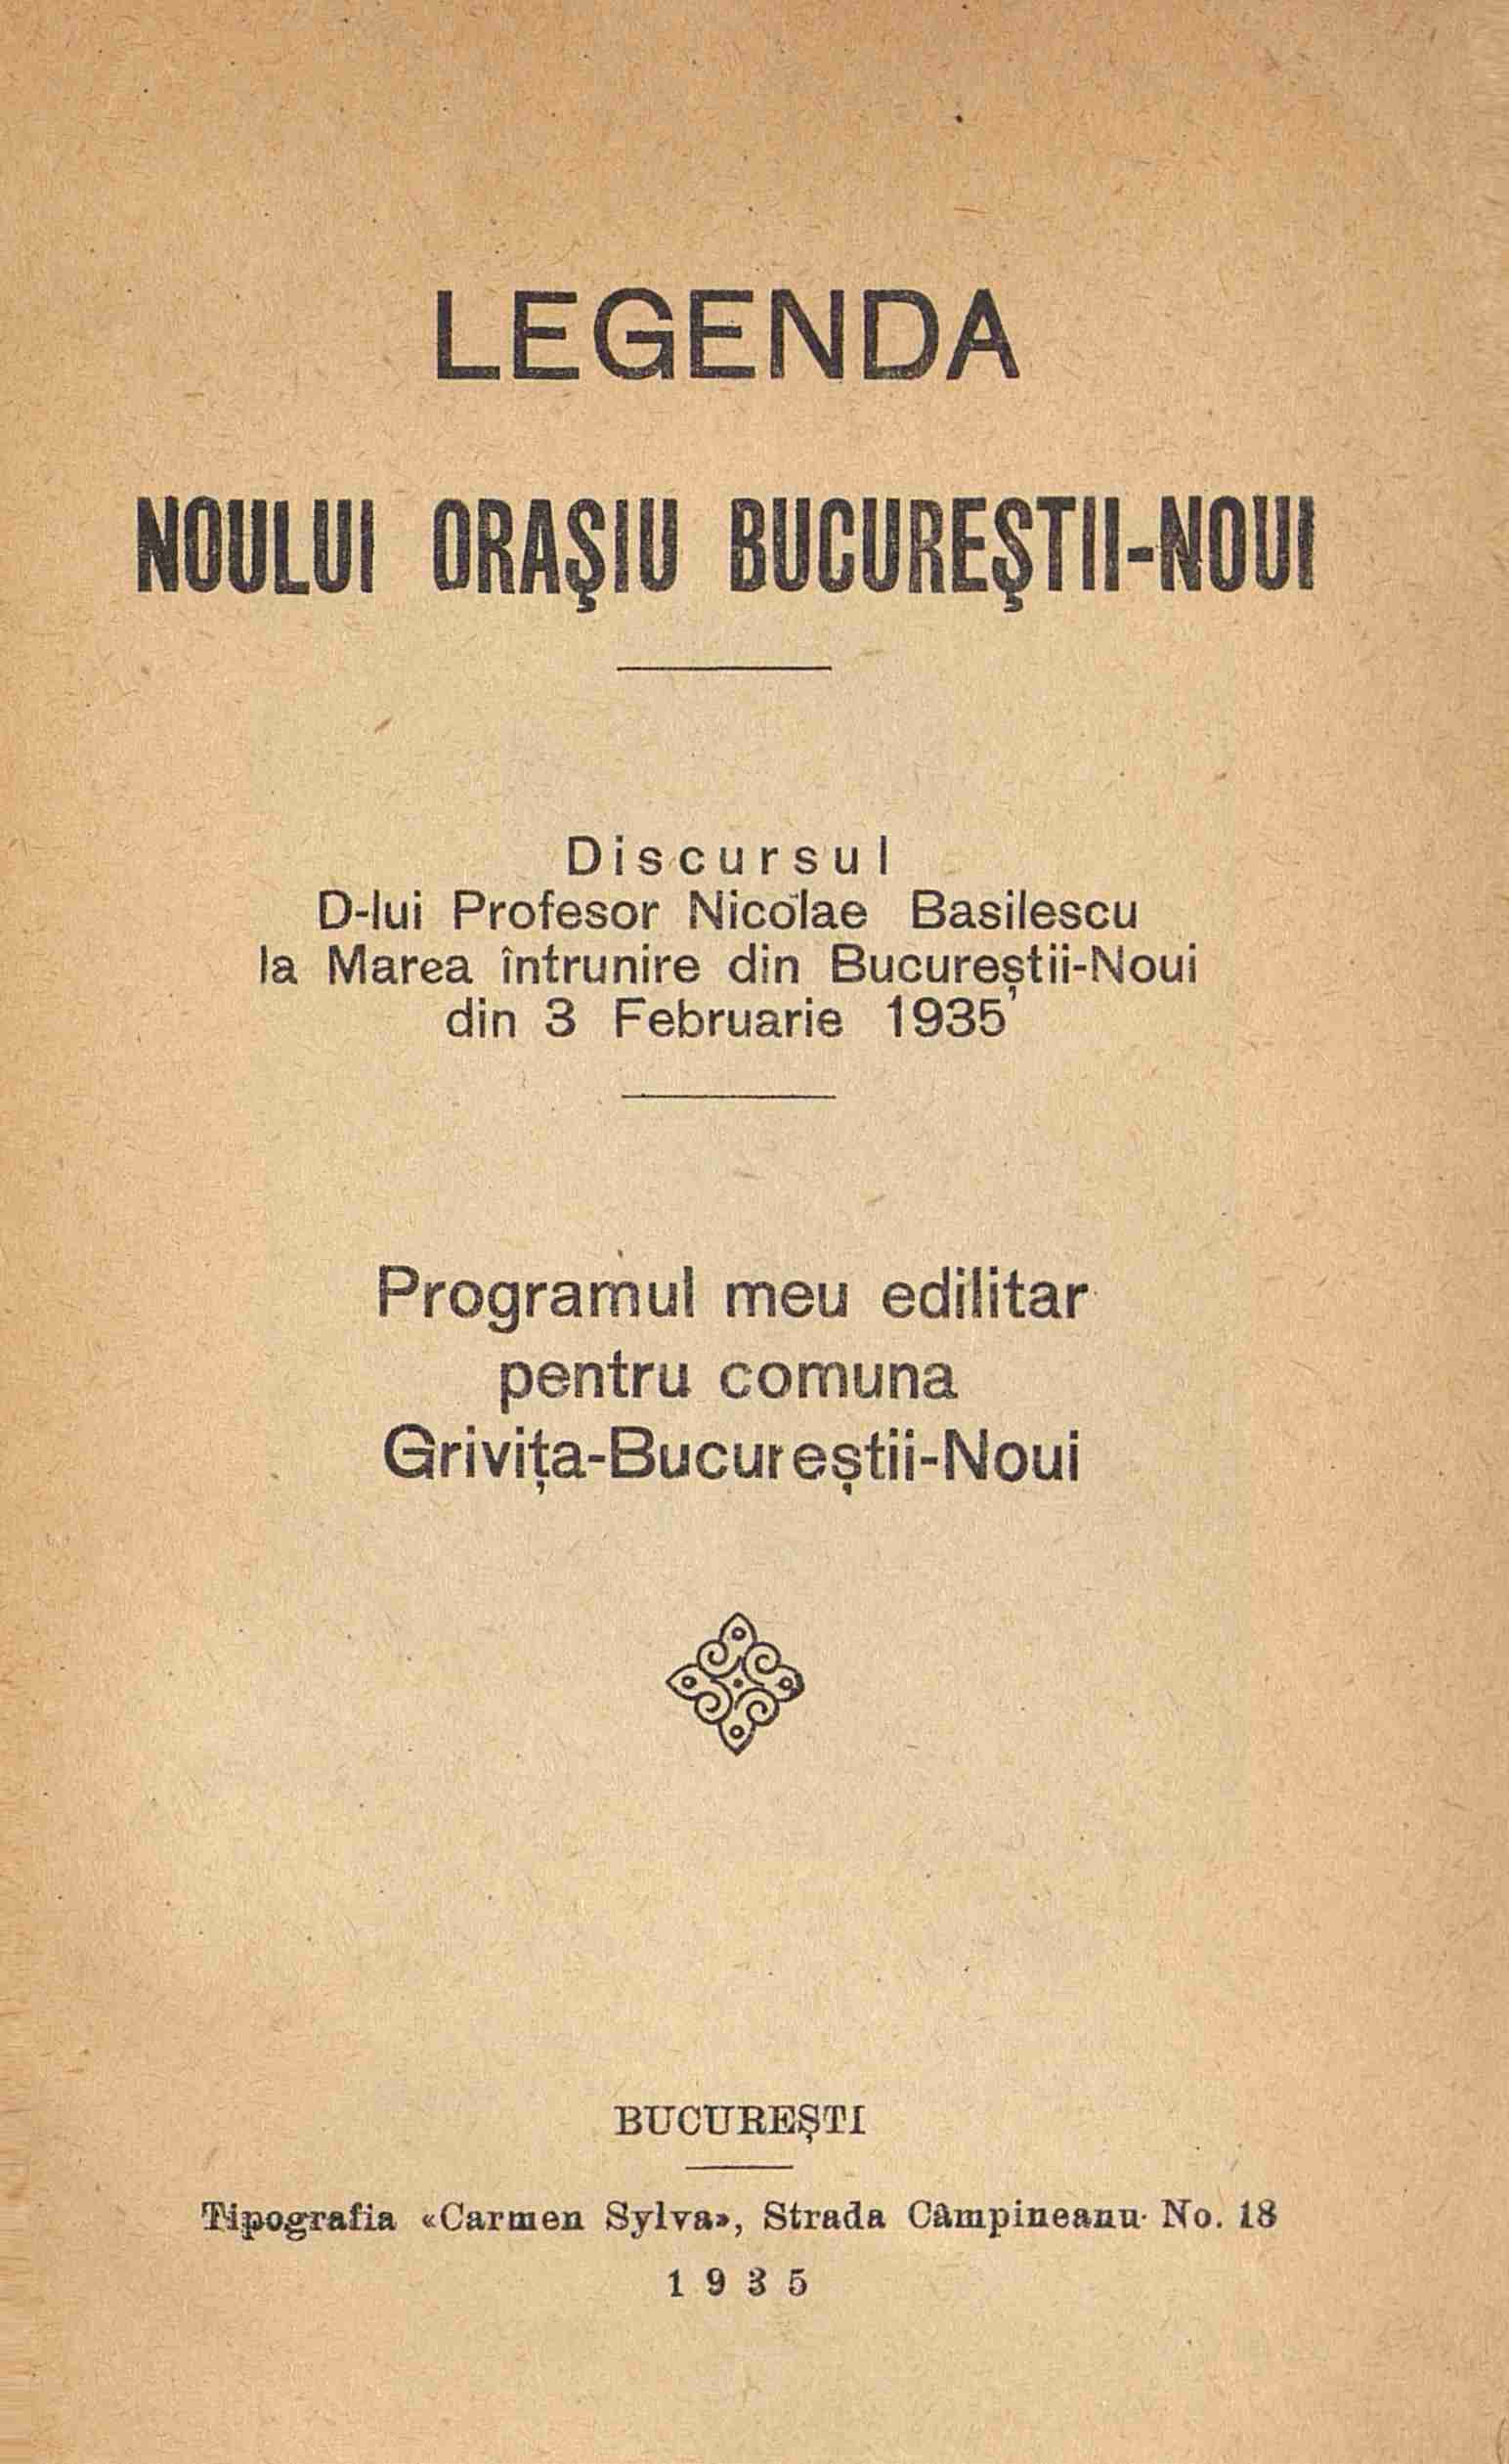 , LEGENDA NOULUI 011,11$111 BUCURE$T11-NOUI Discursu I D -Iui Profesor NicOlae Basilescu la Marea intrunire din Bucurestii-Noui din 3 Februarie 1935'